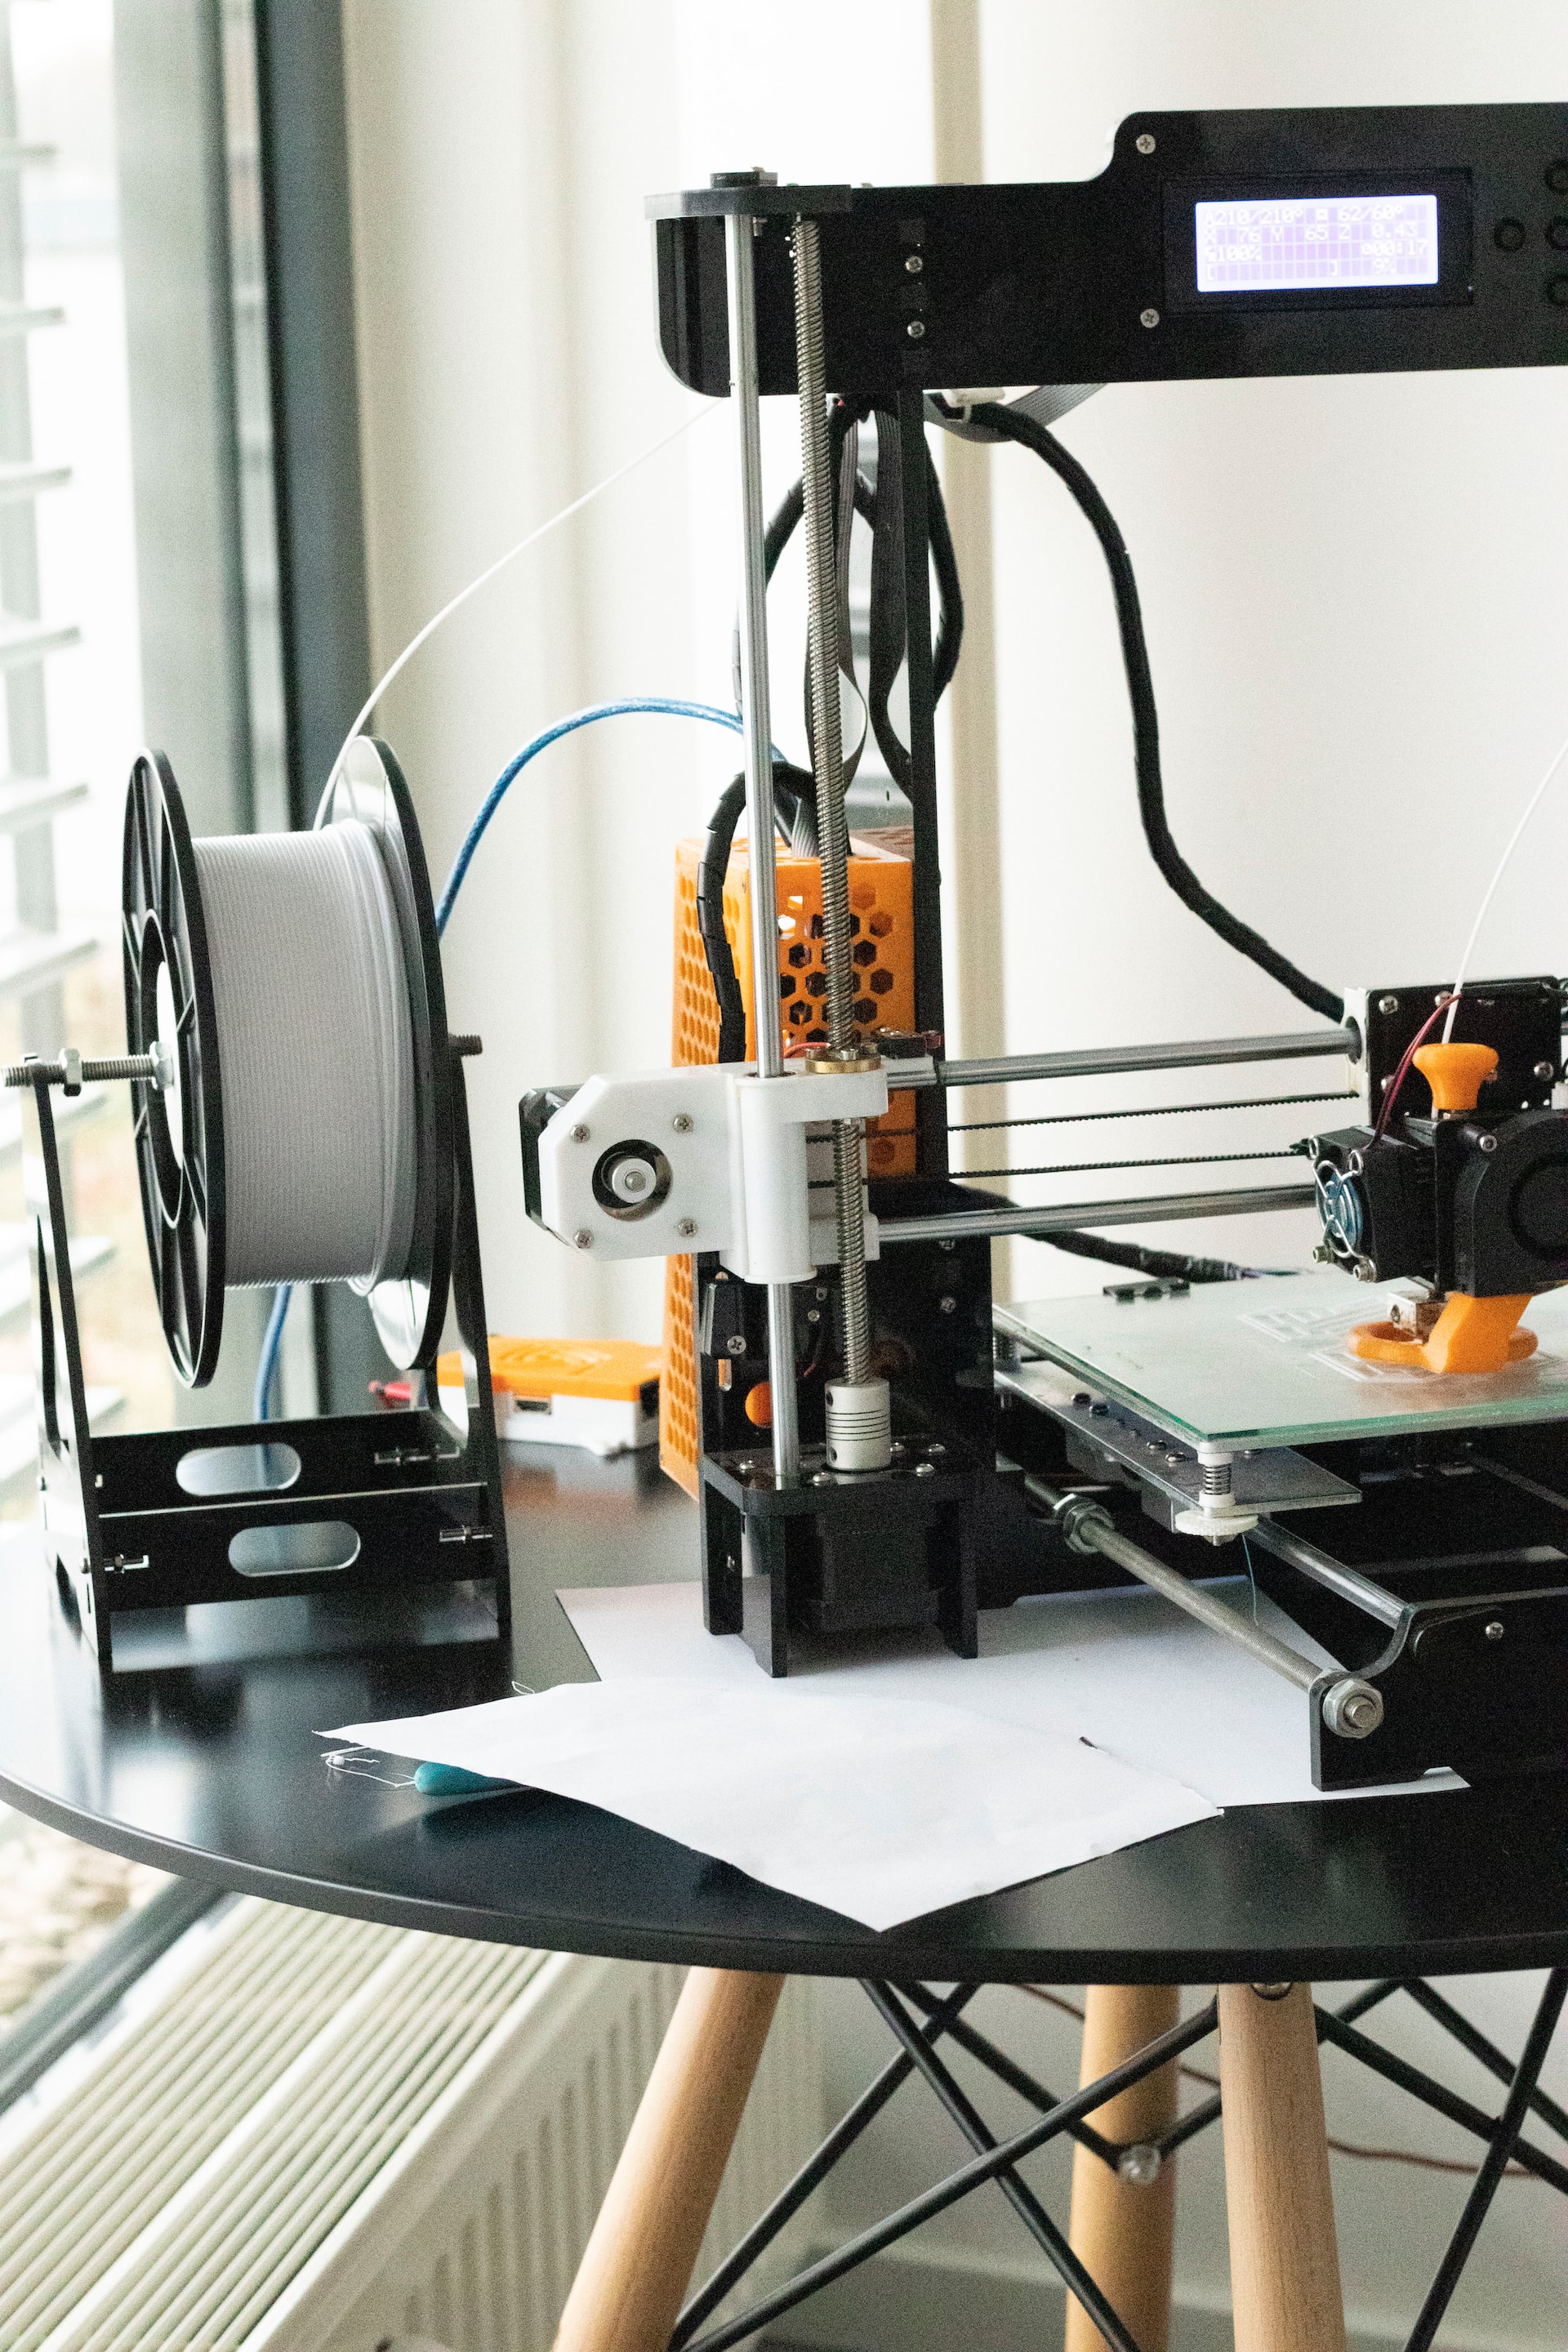 Elérkezett a 3D nyomtatás forradalma?